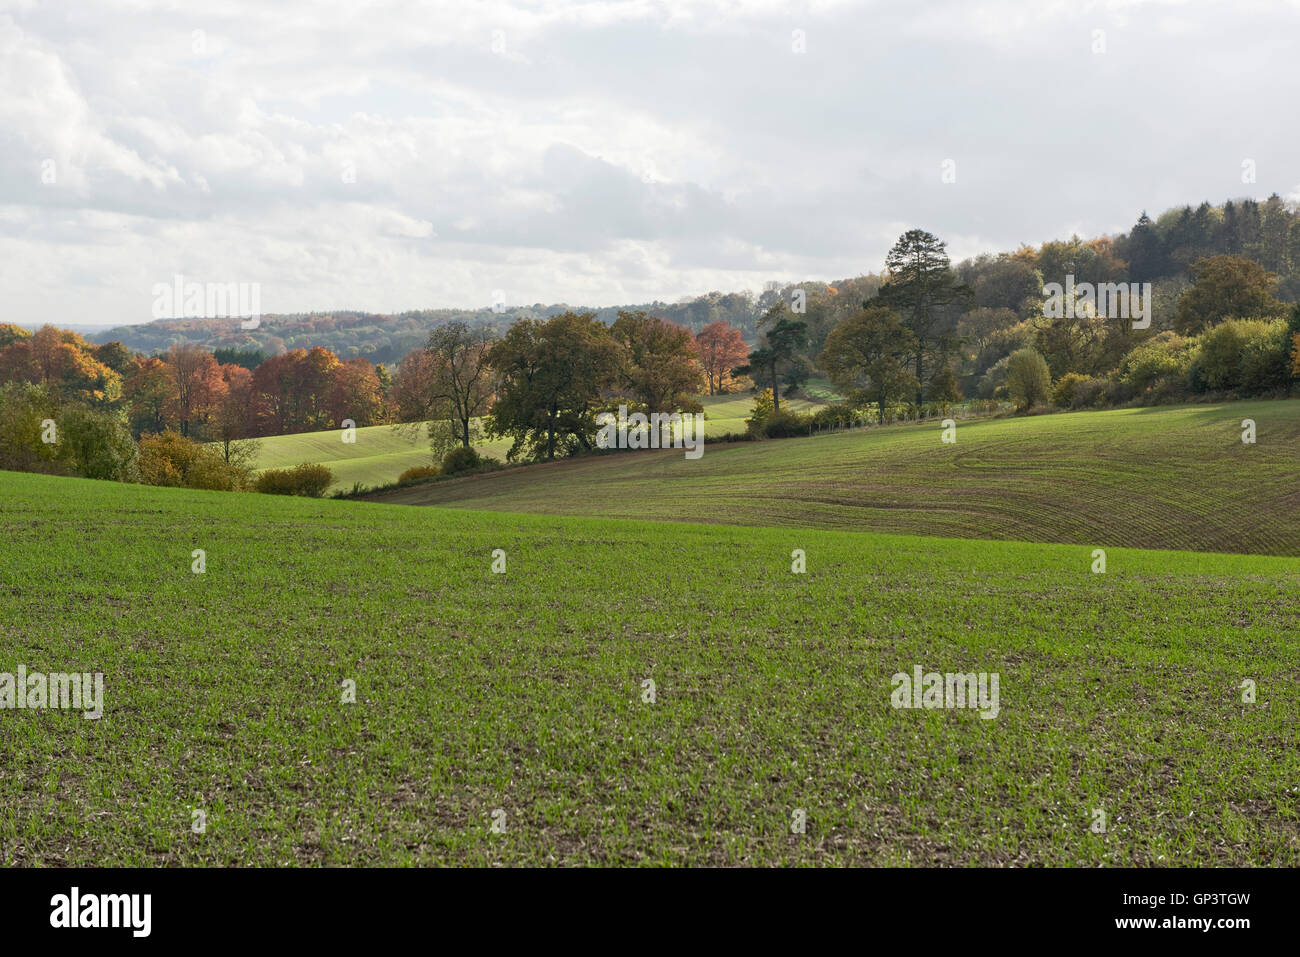 Entwicklung der Winterweizen Ernte vom Sämling zur Ernte, Berkshire, Sämling, Oktober Stockfoto